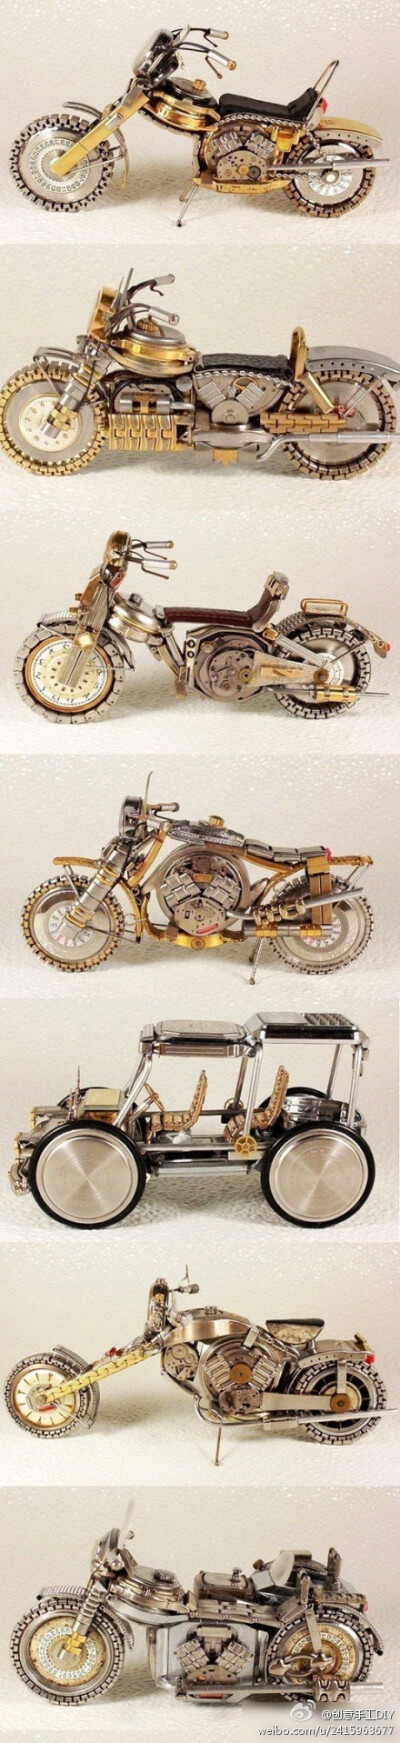 旧手表做出的摩托车模型，很给力吧~~ 创意手工DIY